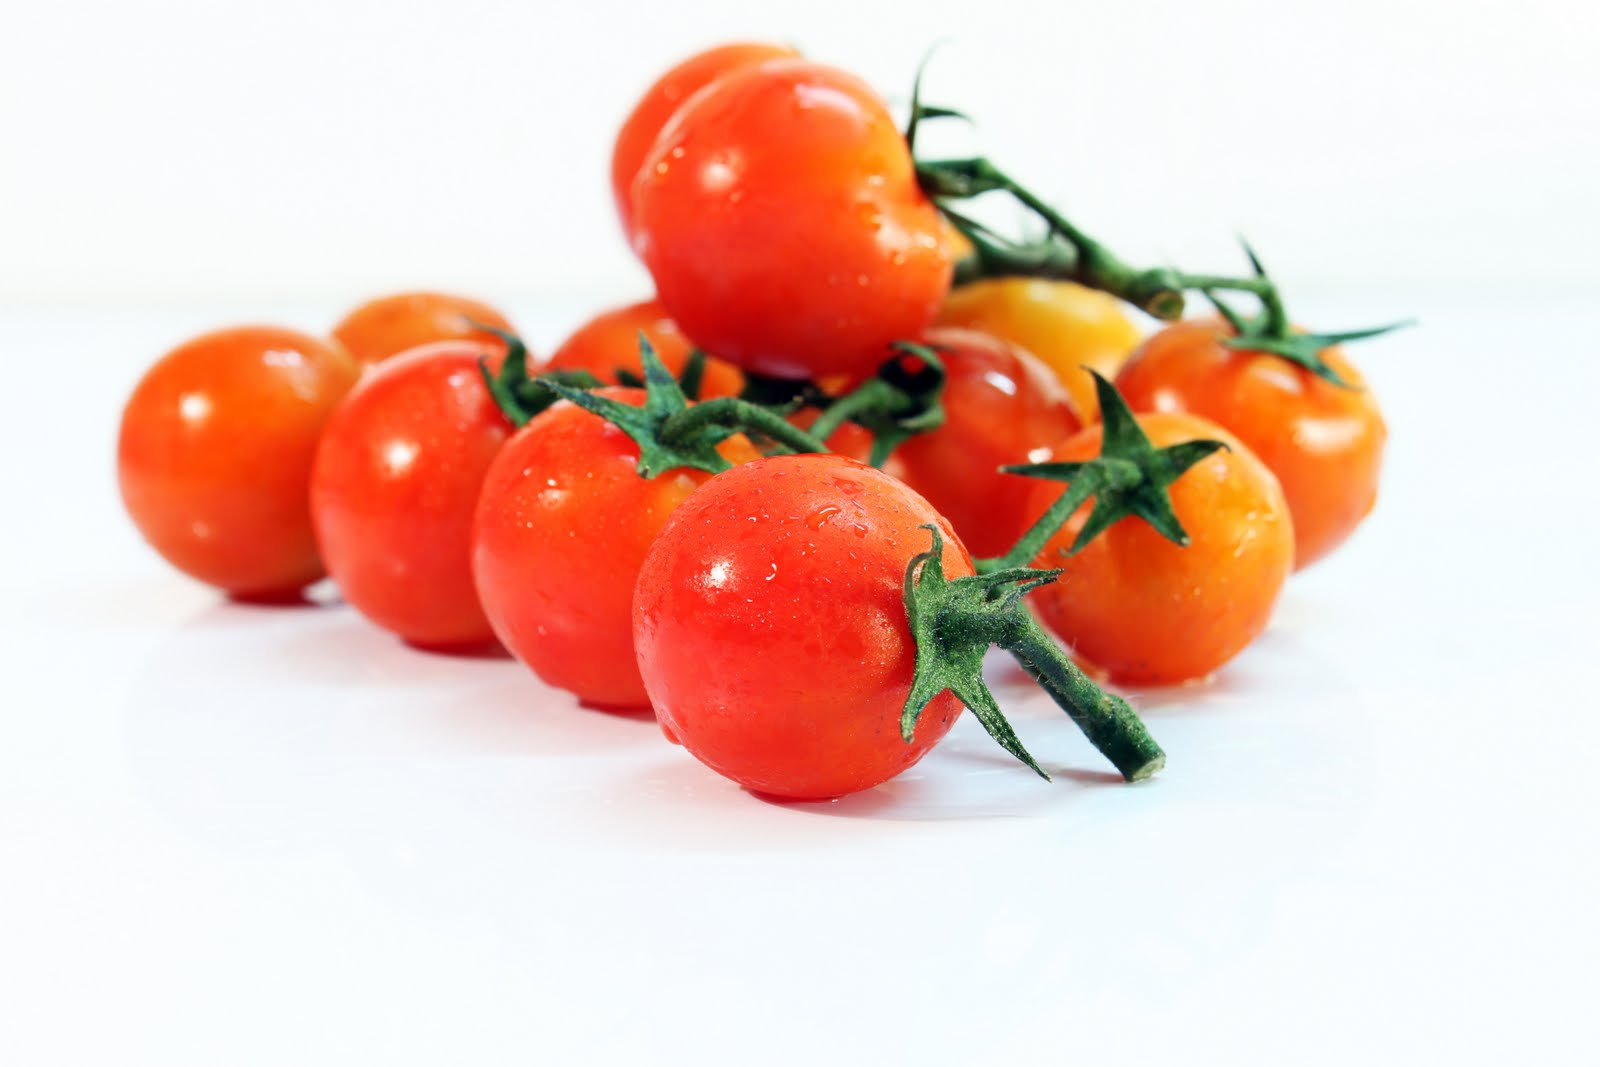  تفسير حلم الطماطم للرجل